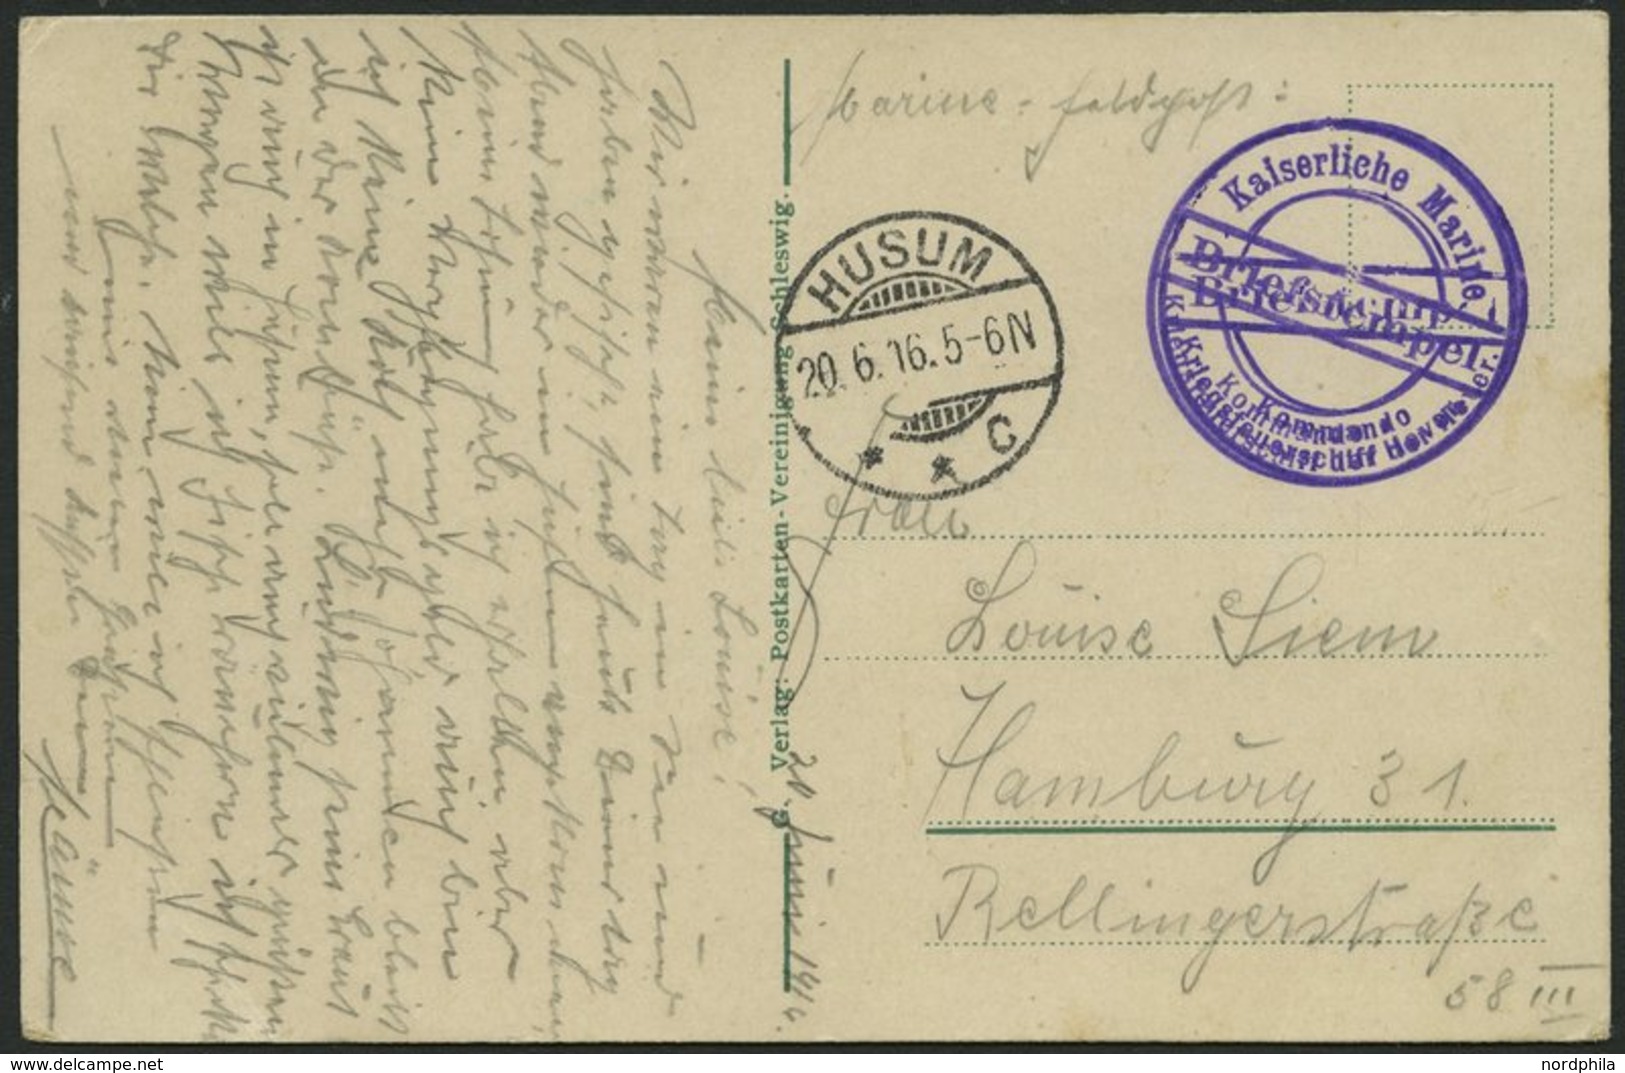 MSP VON 1914 - 1918 (Kriegsfeuerschiff Der Hever), 20.6.1916, Violetter Briefstempel, Poststempel Husum, Feldpost-Ansich - Schiffahrt